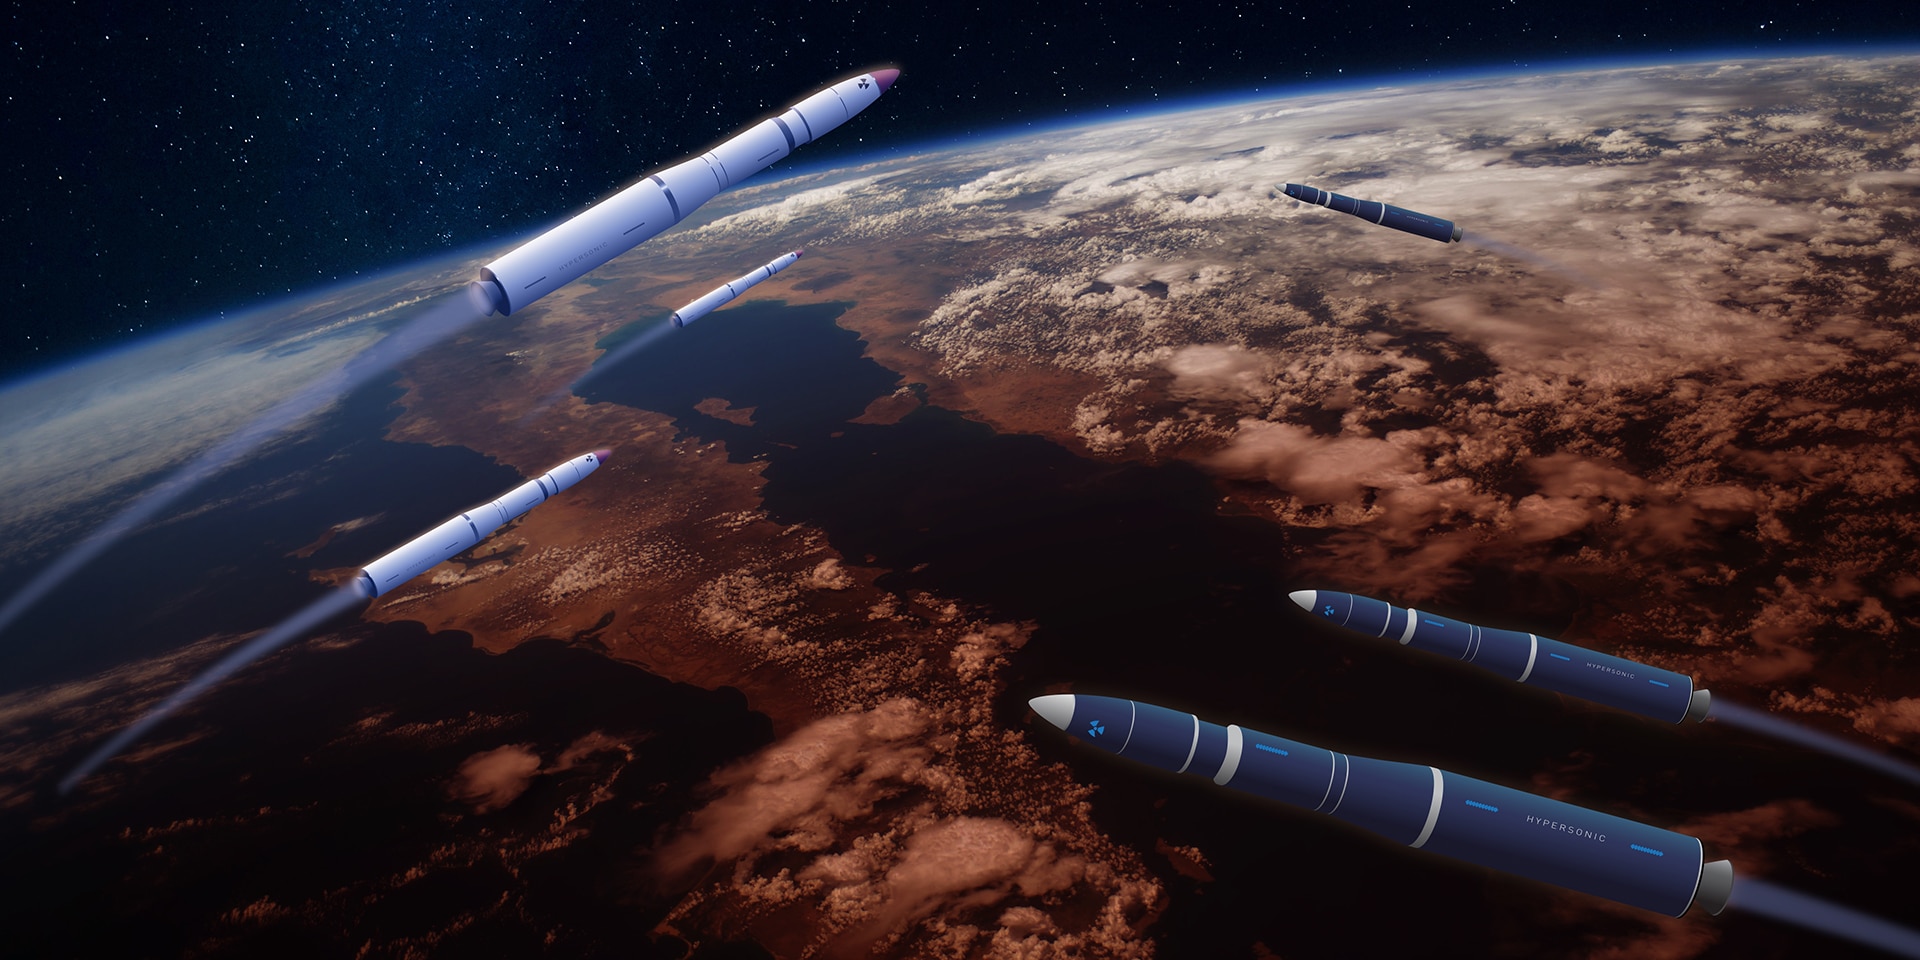 Illustration mit zahlreichen Raketen, die in unterschiedliche Richtungen fliegen, mit der Weltkugel im Hintergrund.